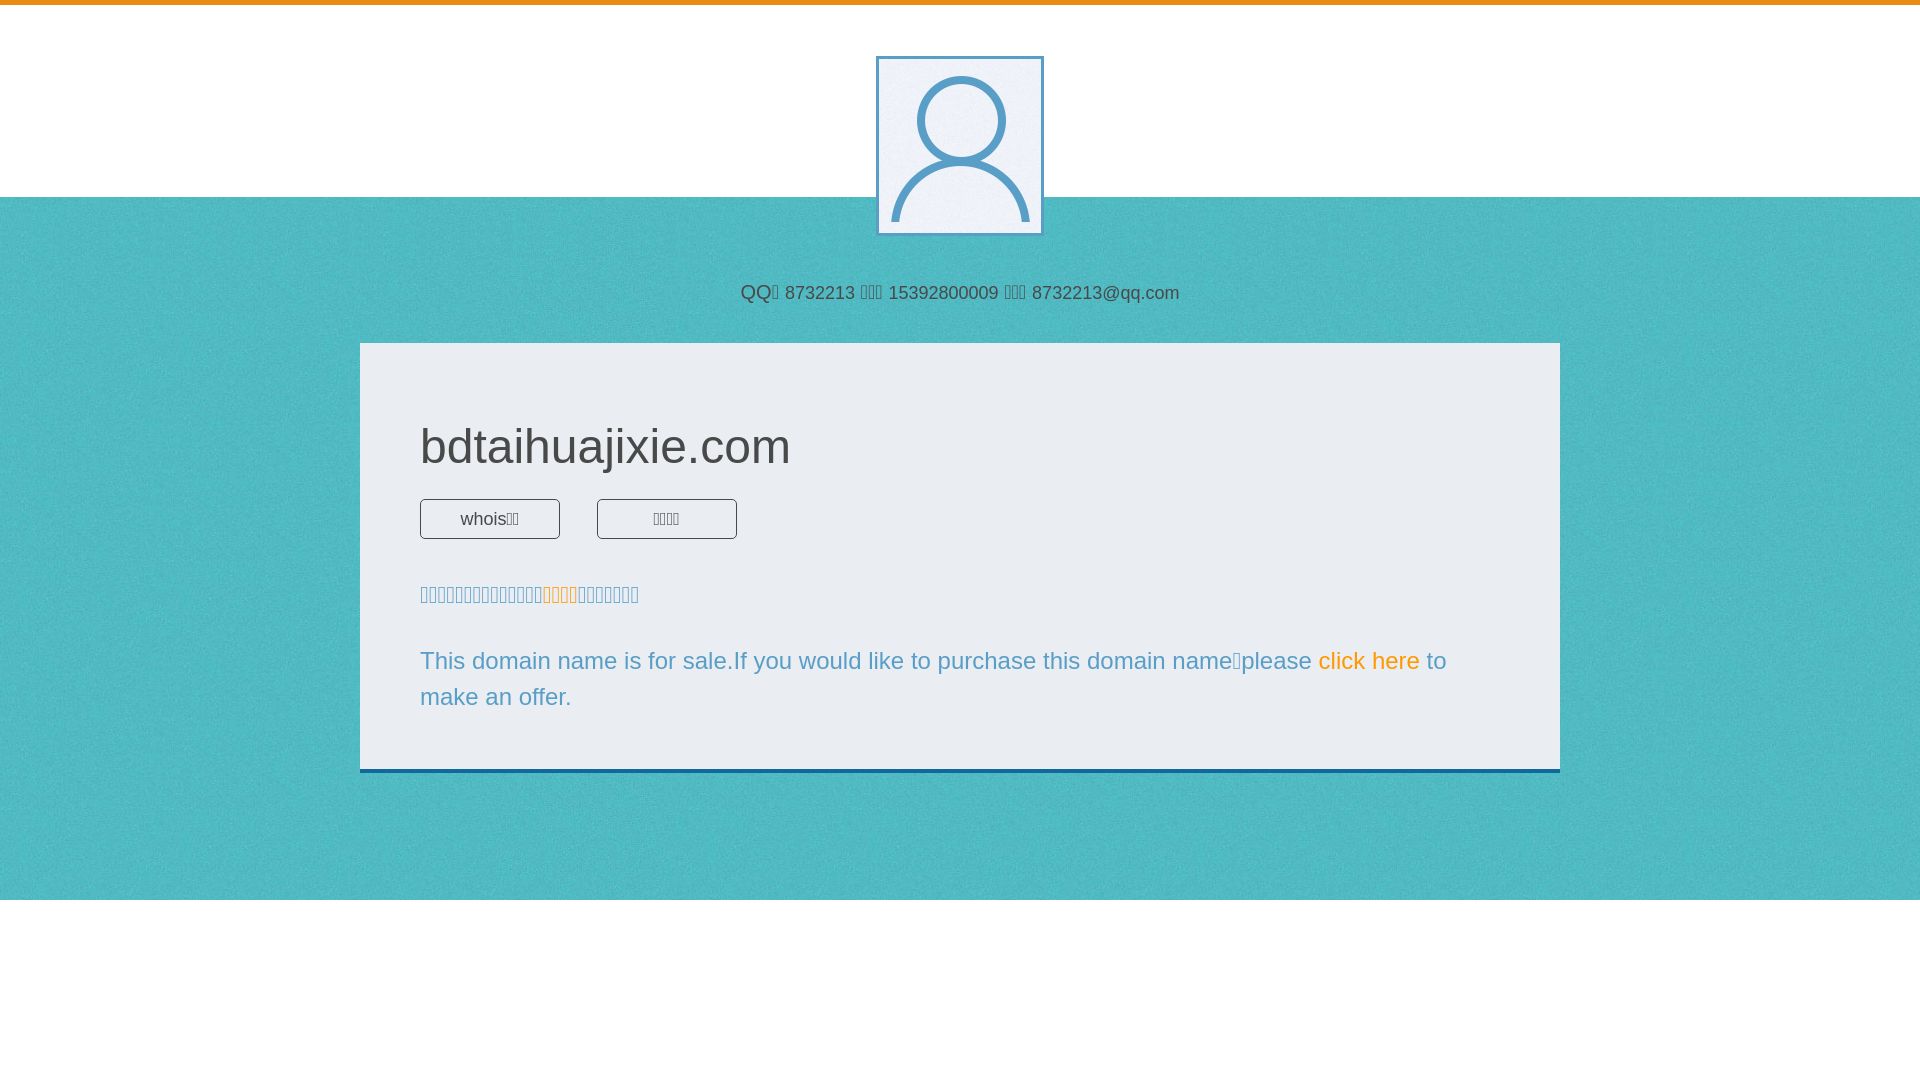 État du site web bdtaihuajixie.com est   EN LIGNE